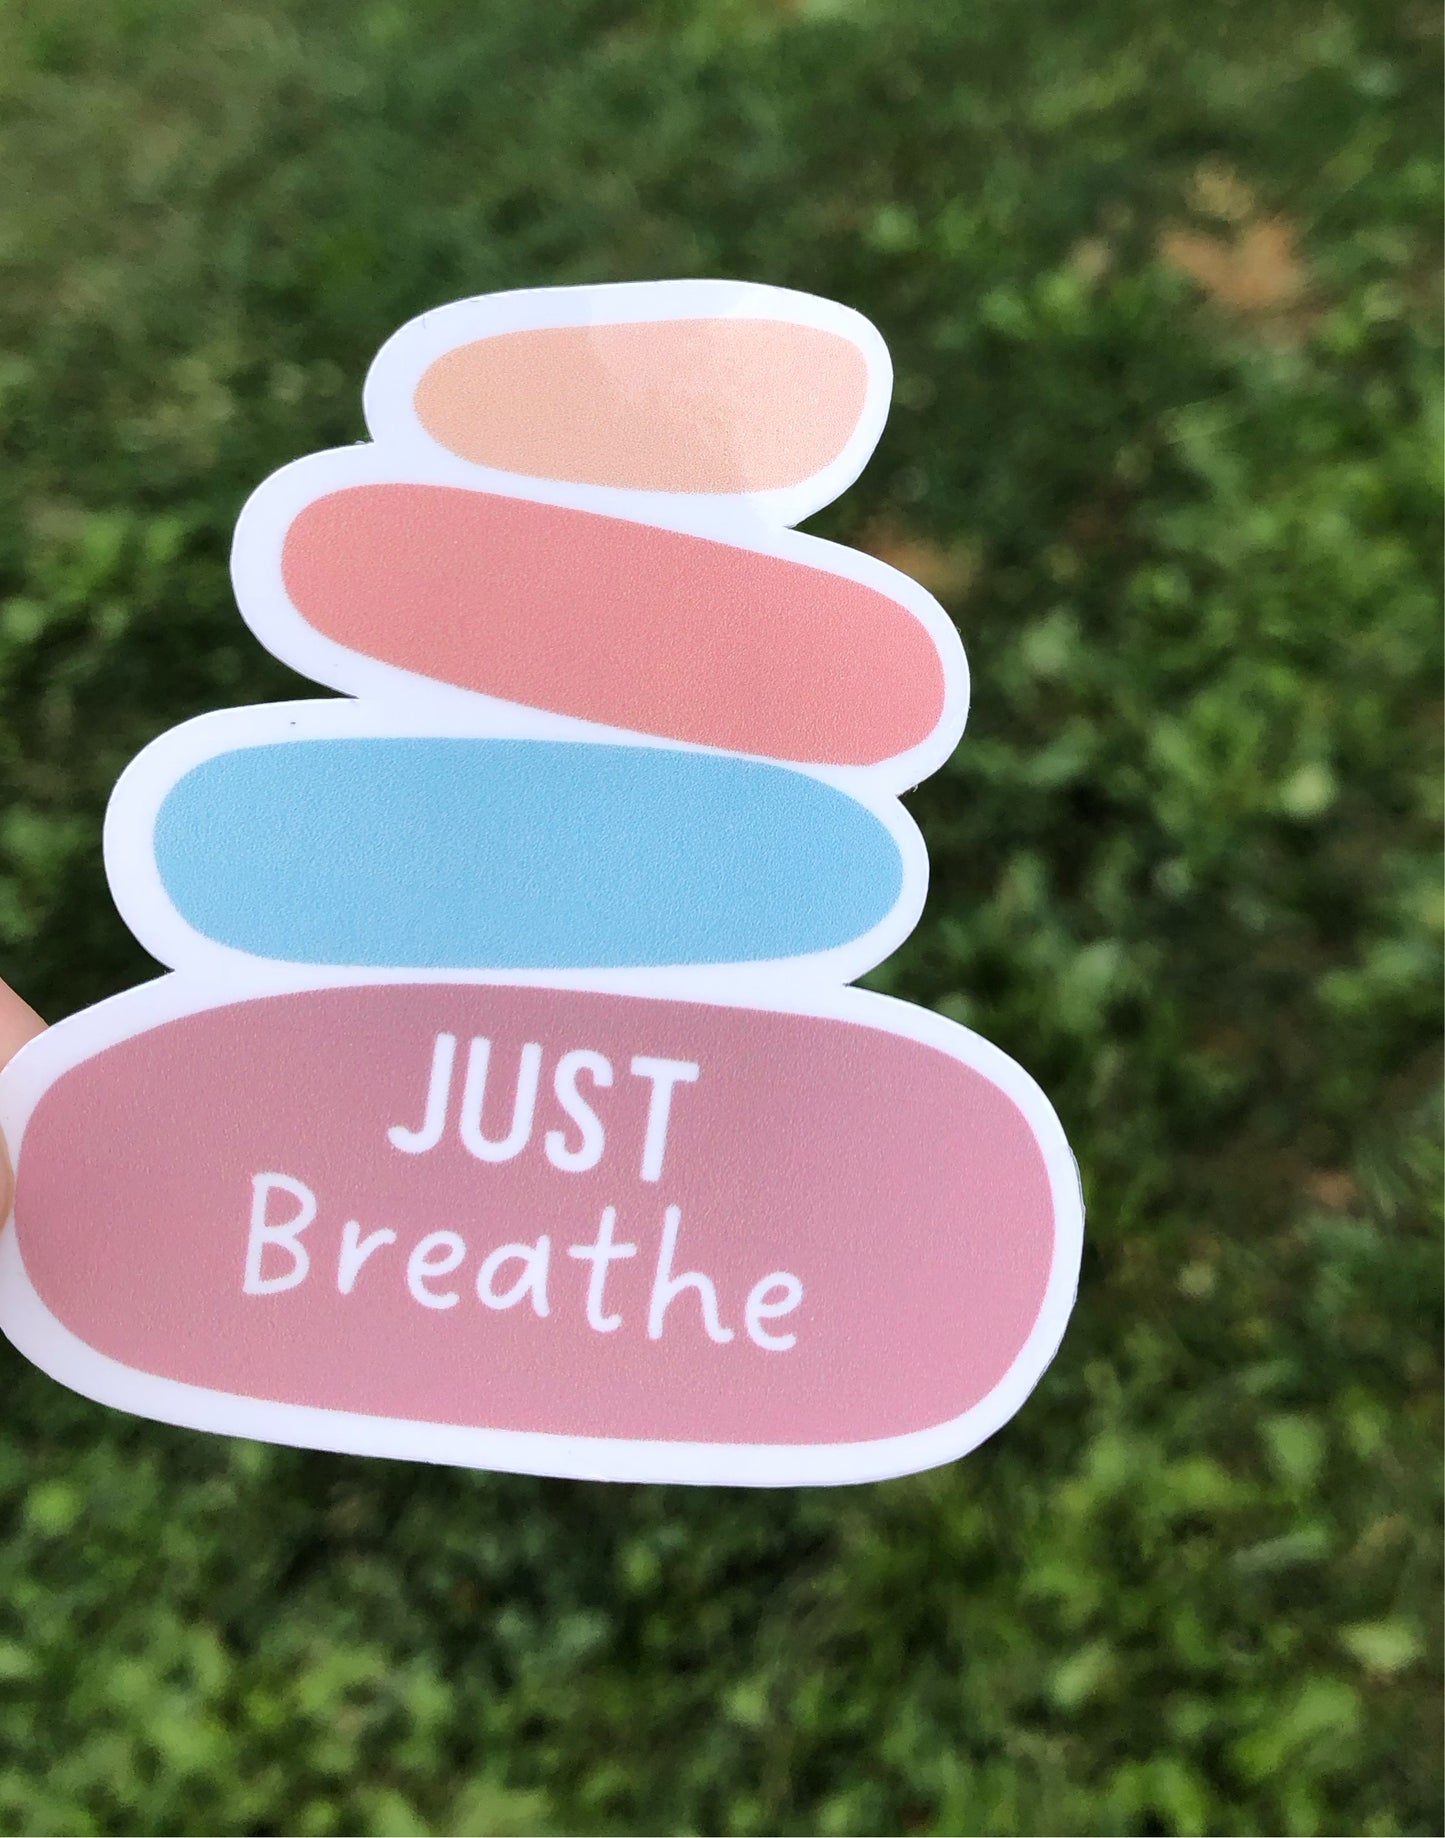 Just Breathe sticker